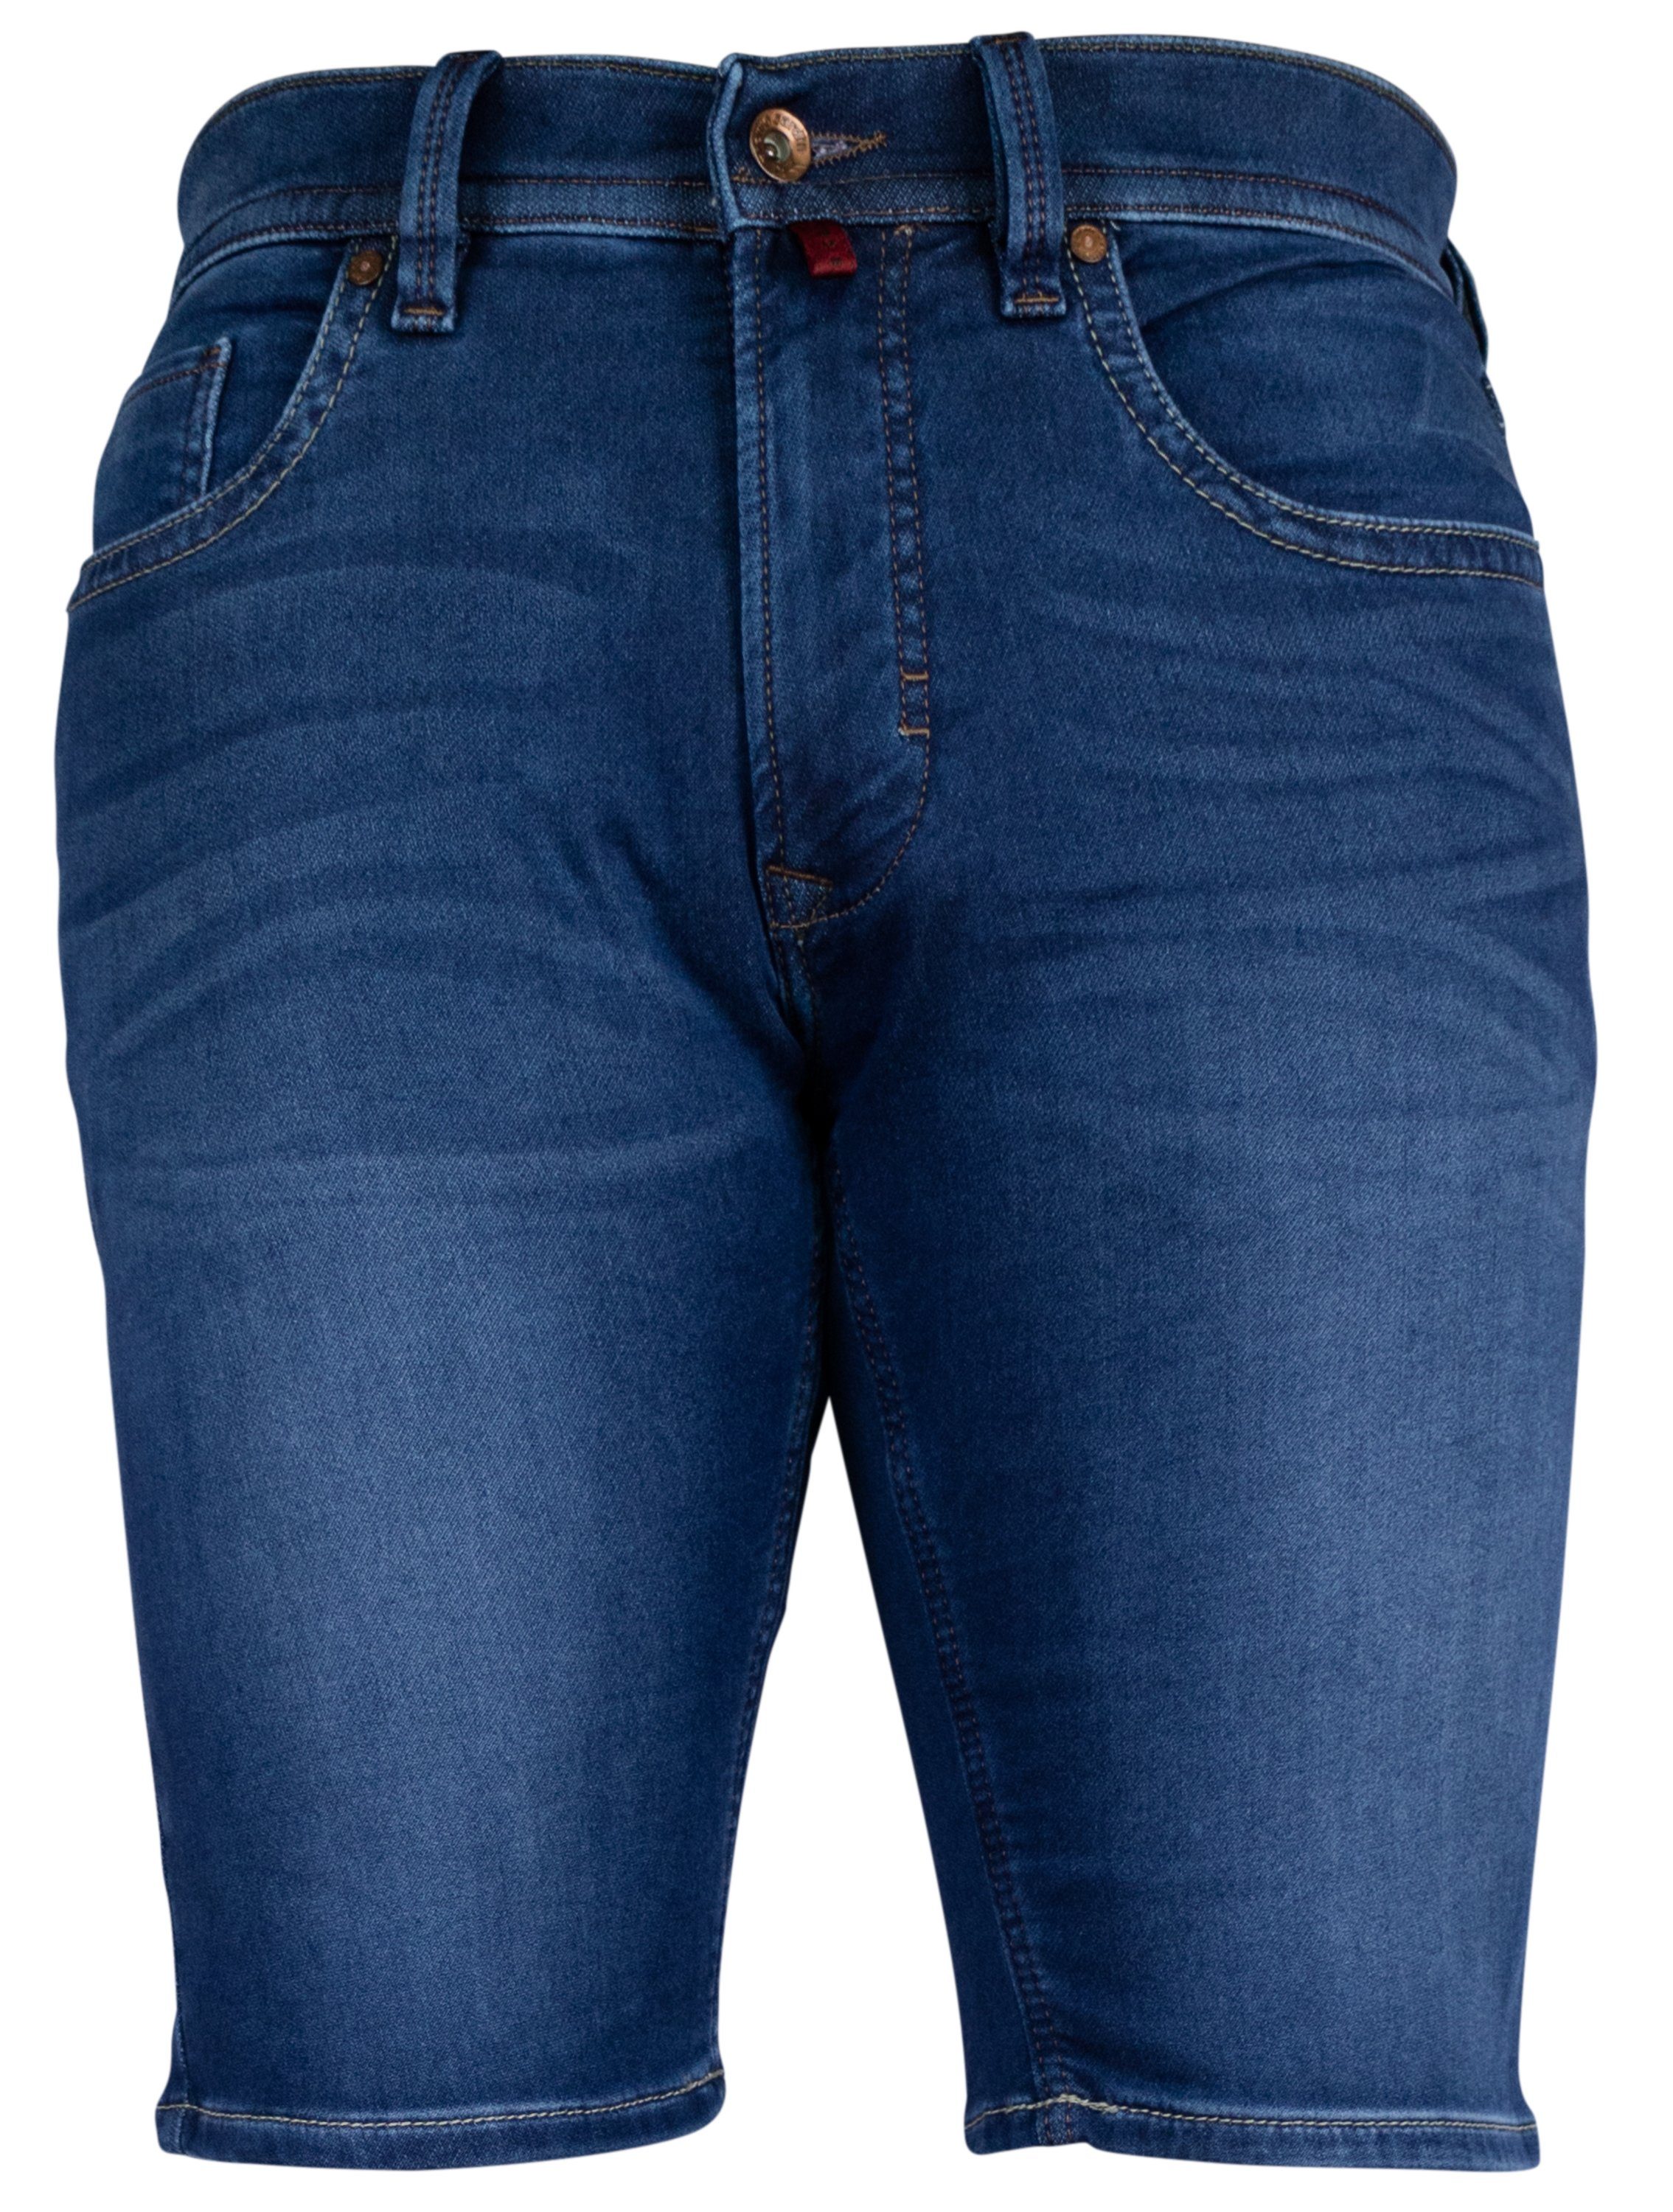 Pierre Cardin 5-Pocket-Jeans PIERRE CARDIN DEAUVILLE SHORTS dark blue 3476 7690.41